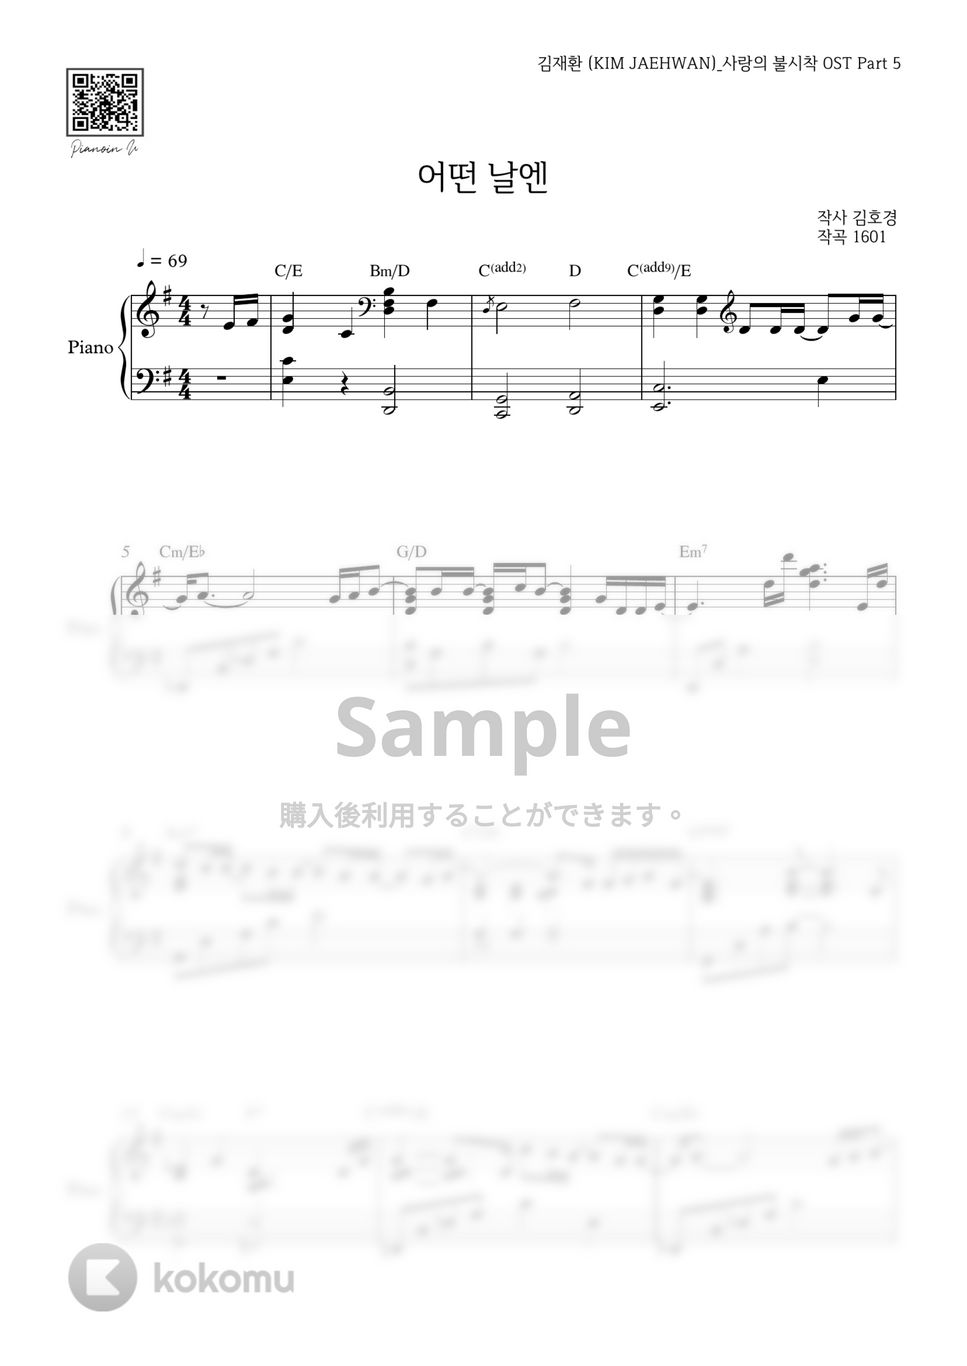 キム・ジェファン(愛の不時着 OST) - ある日に by PIANOiNU